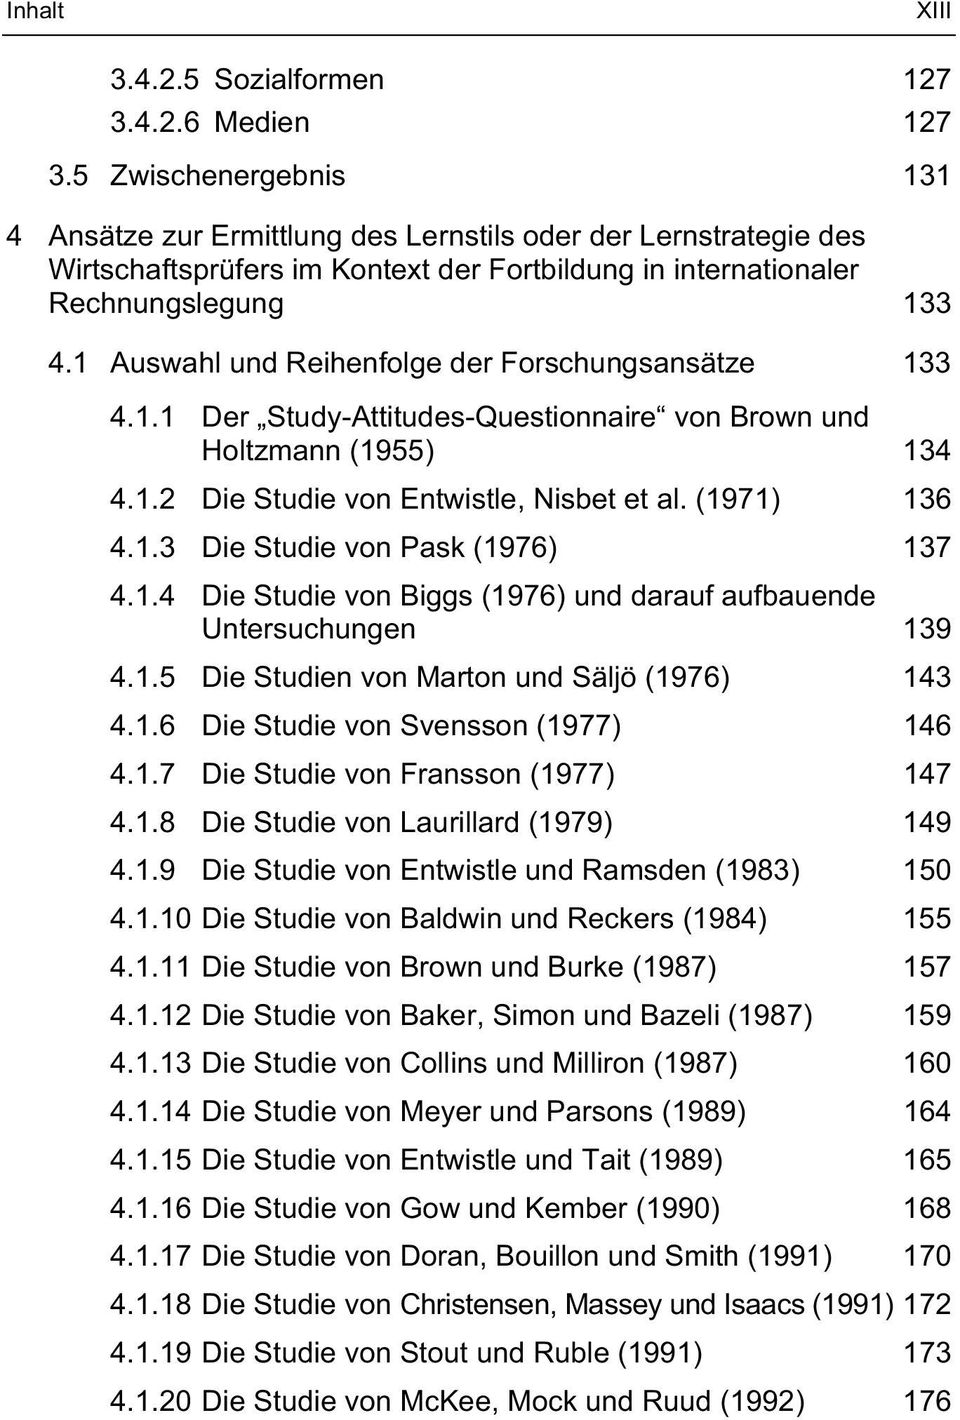 1 Auswahl und Reihenfolge der Forschungsansätze 133 4.1.1 Der Study-Attitudes-Questionnaire von Brown und Holtzmann (1955) 134 4.1.2 Die Studie von Entwistle, Nisbet et al. (1971) 136 4.1.3 Die Studie von Pask (1976) 137 4.